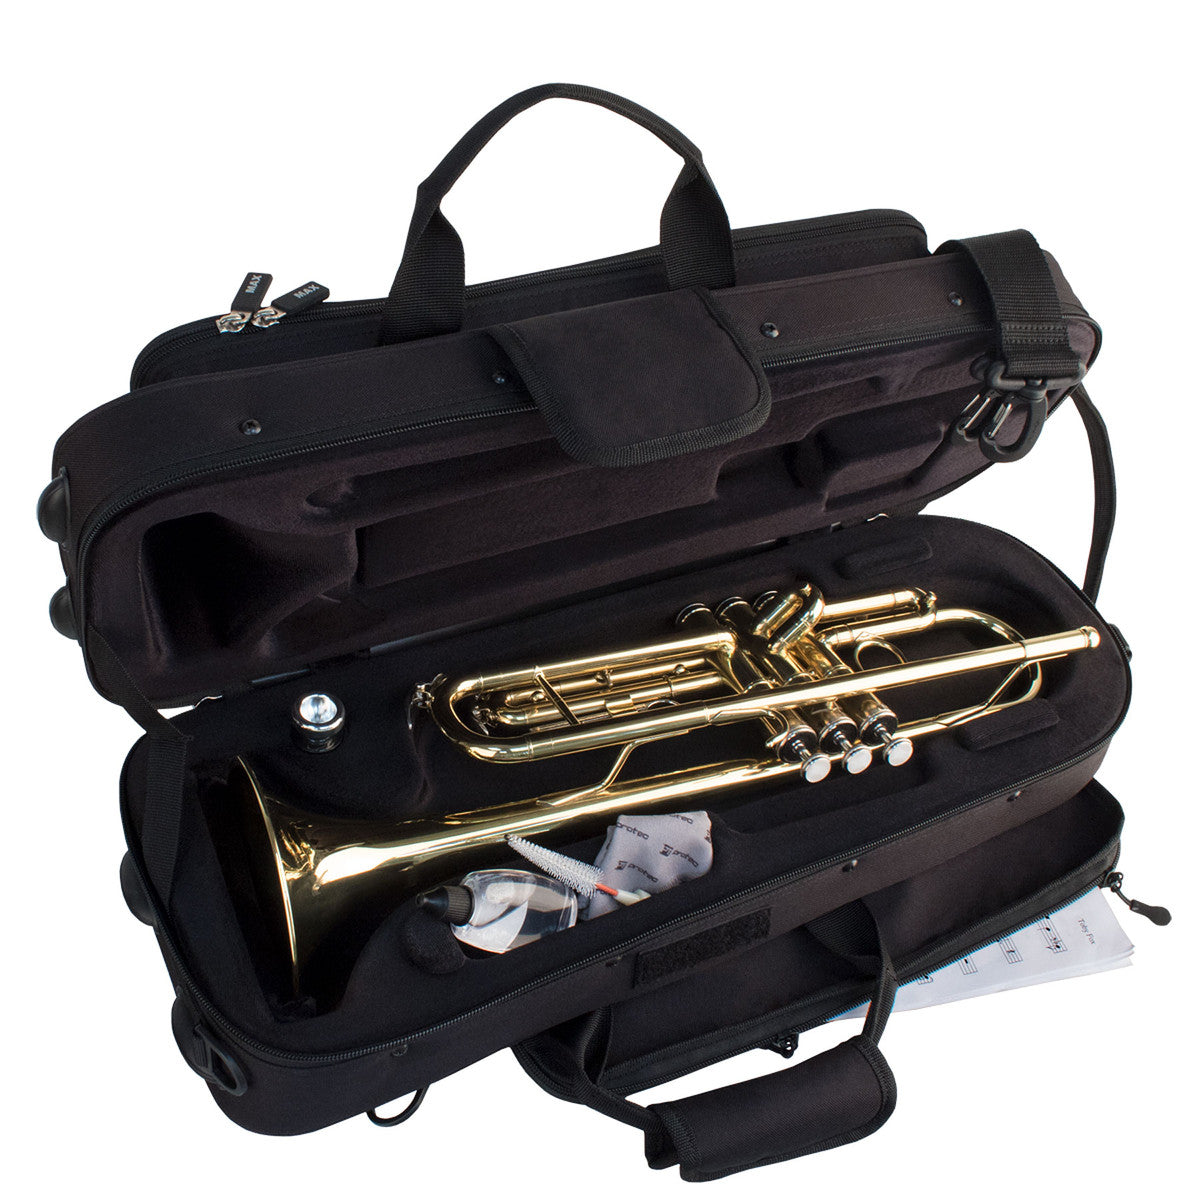 Protec Max Contoured Trumpet Case